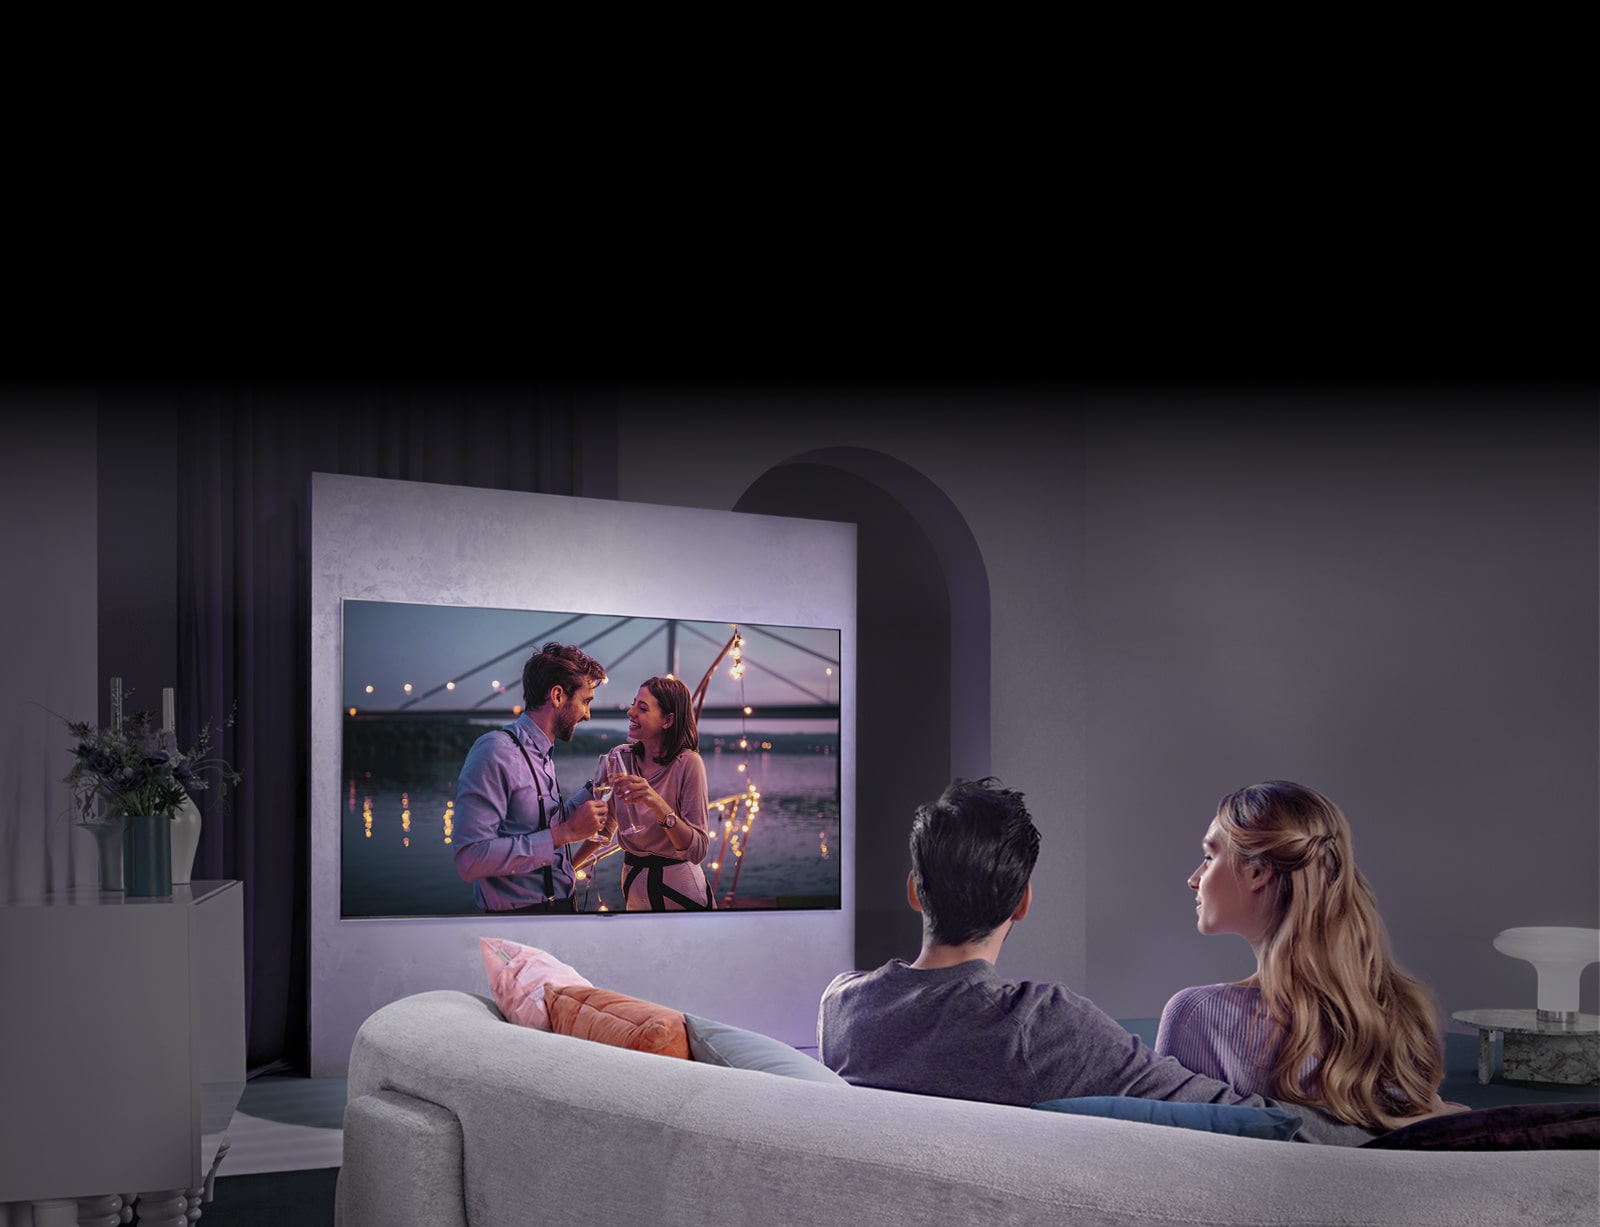 Ant sofos sėdintis žmogus žiūri filmą per didelį ant sienos pakabintą televizorių.